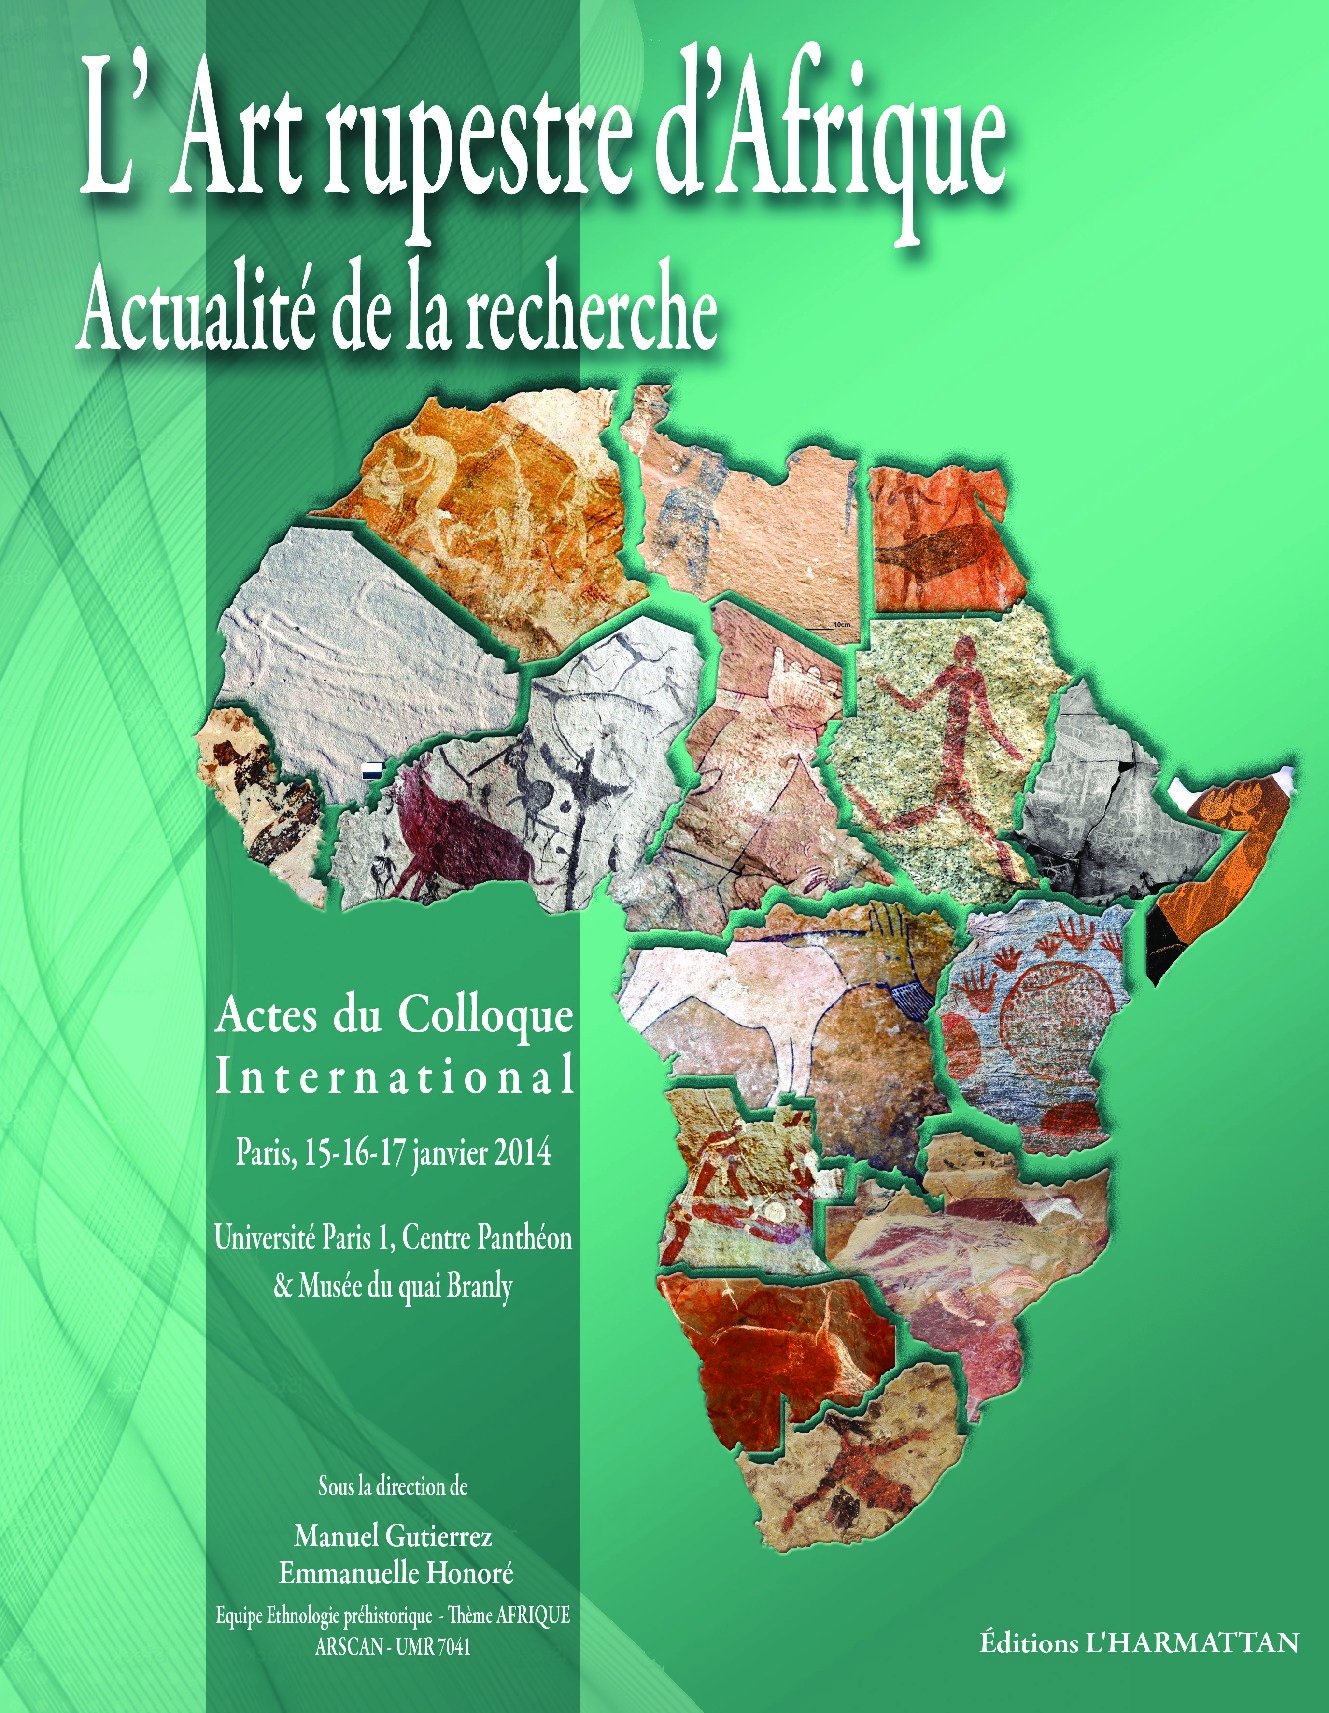 L'Art rupestre d'Afrique. Actualité de la recherche, (actes coll. int. Paris, janv. 2014), 2016, 326 p.